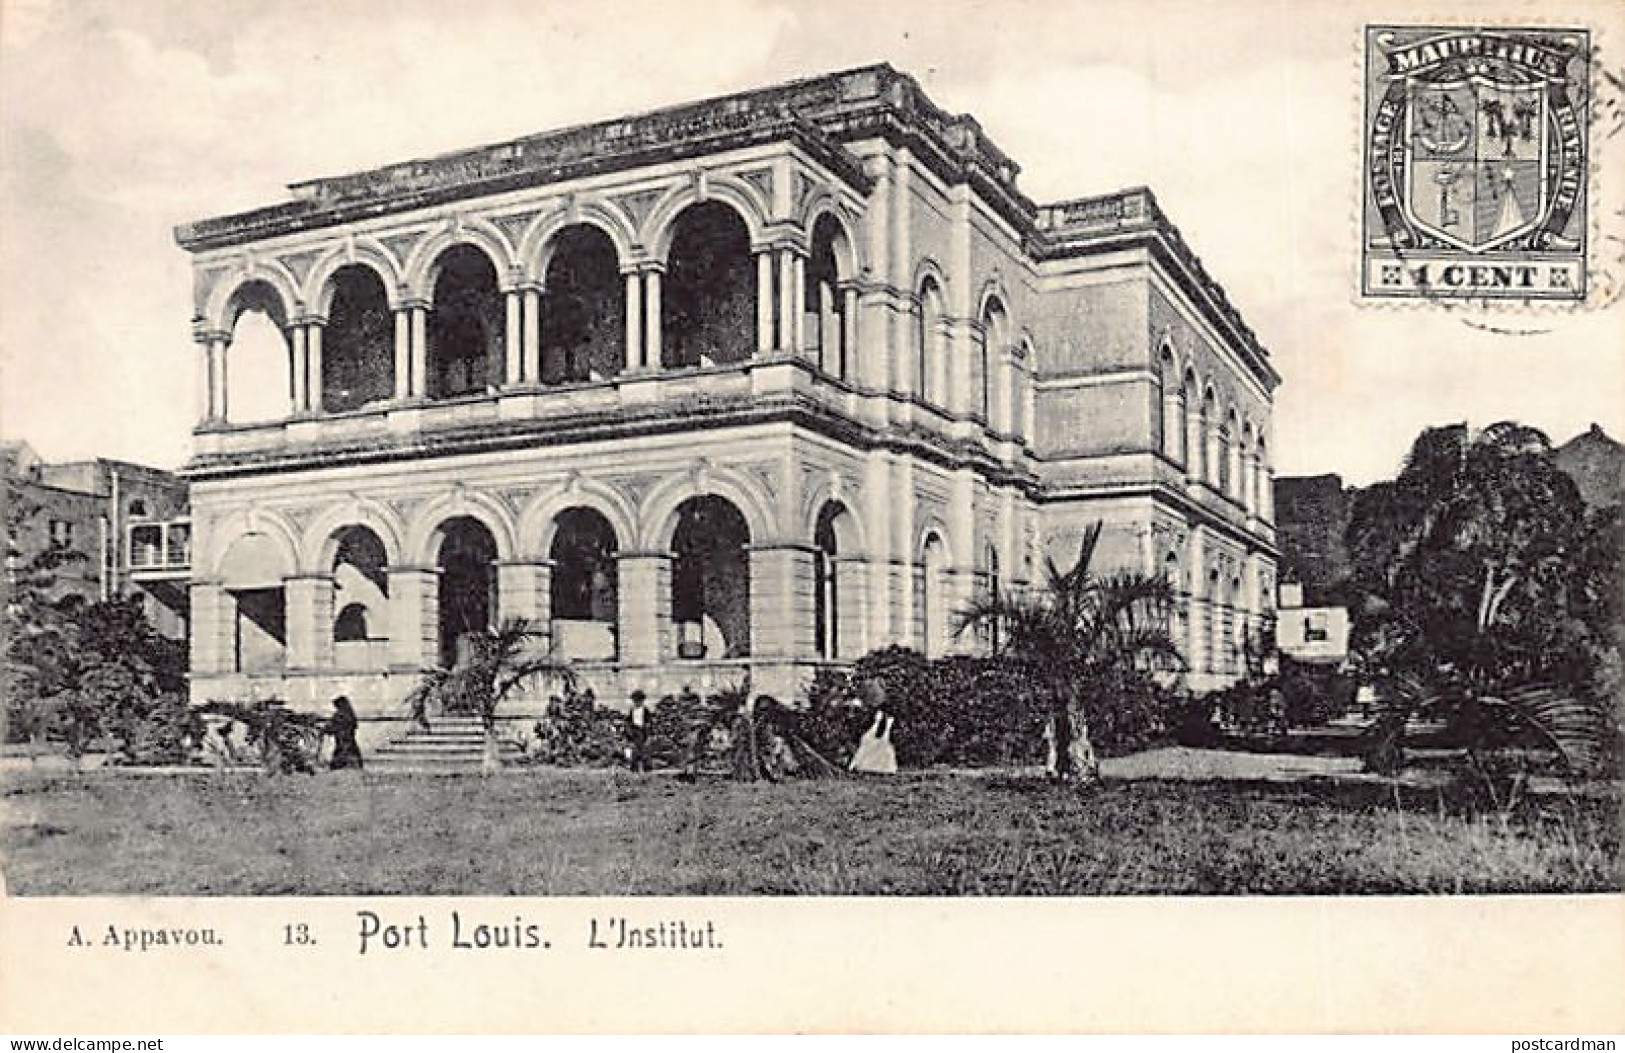 Mauritius - PORT LOUIS - L'Institut - Publ. Appavou 13 - Mauritius